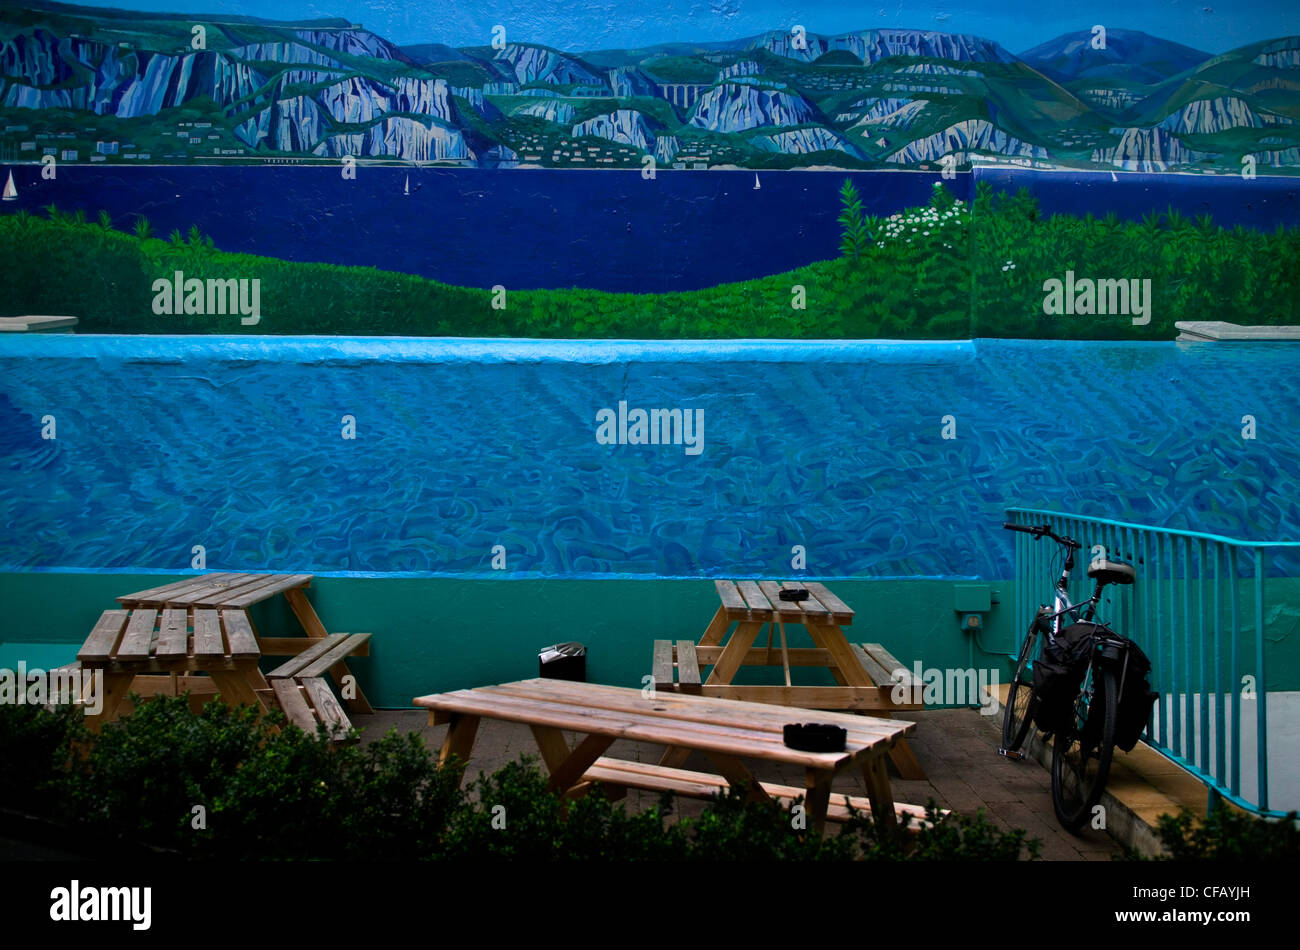 Café terrasse avec tables et banc un vélo contre un mur avec un mur peint avec un paysage de mer et montagne Banque D'Images